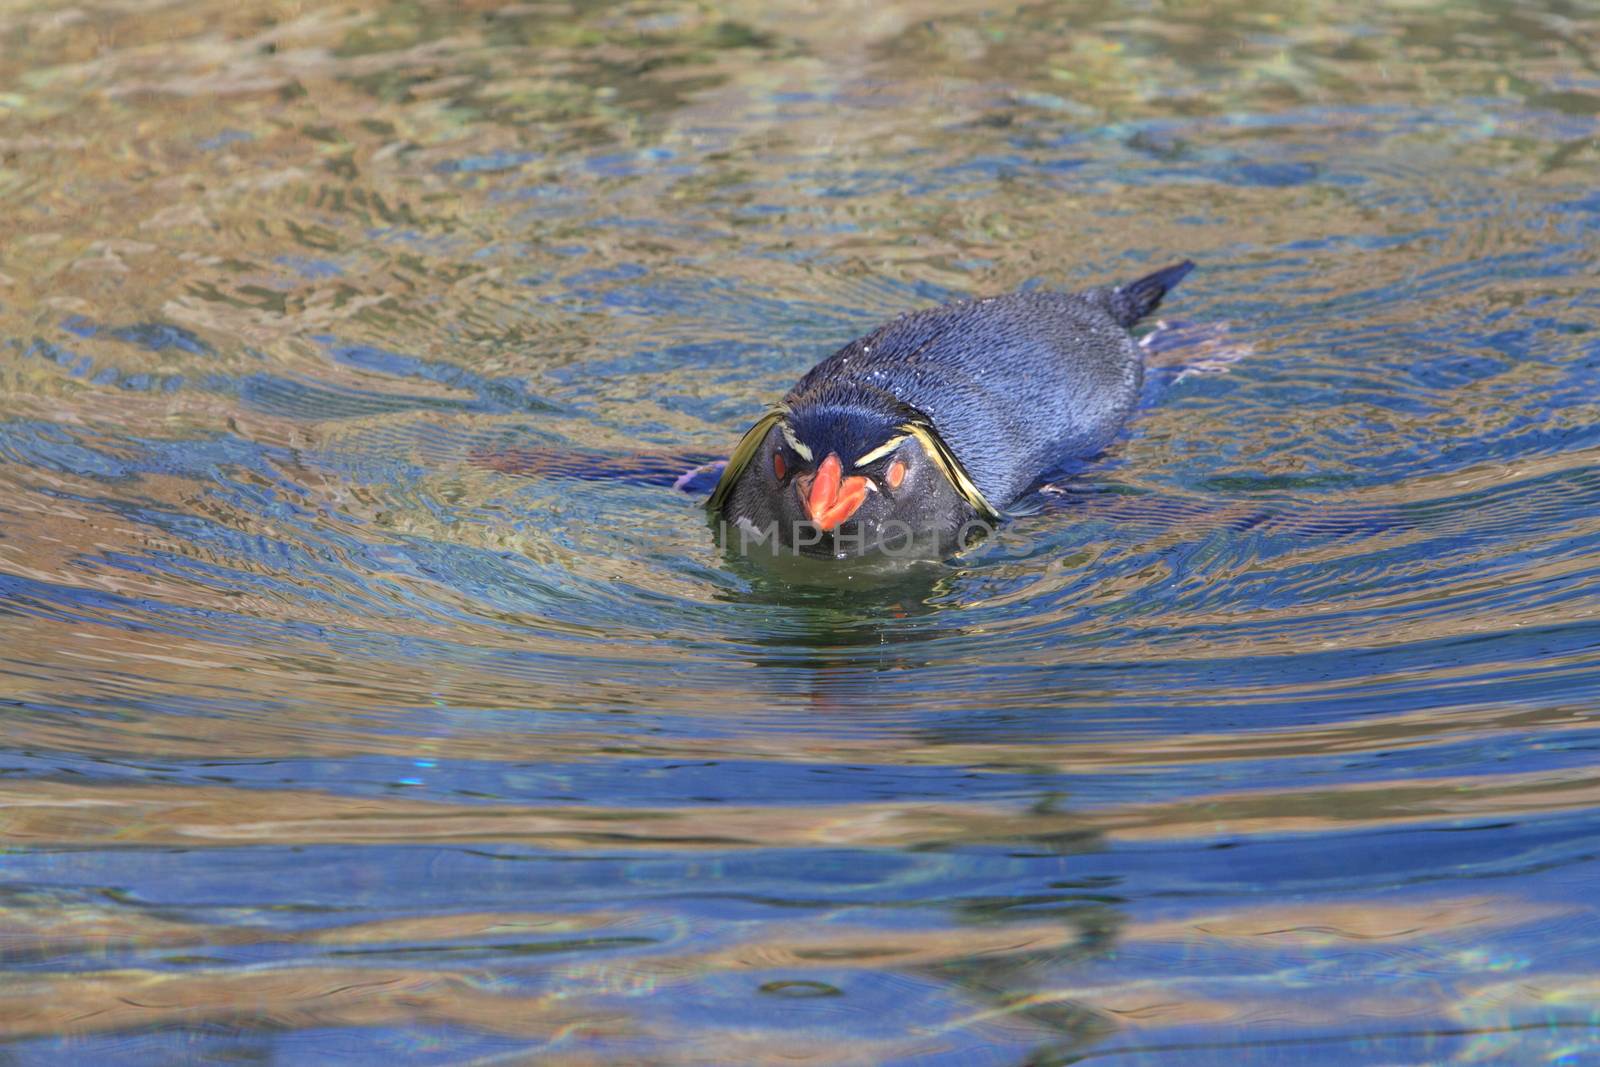 Rockhopper penguin in water by mitzy